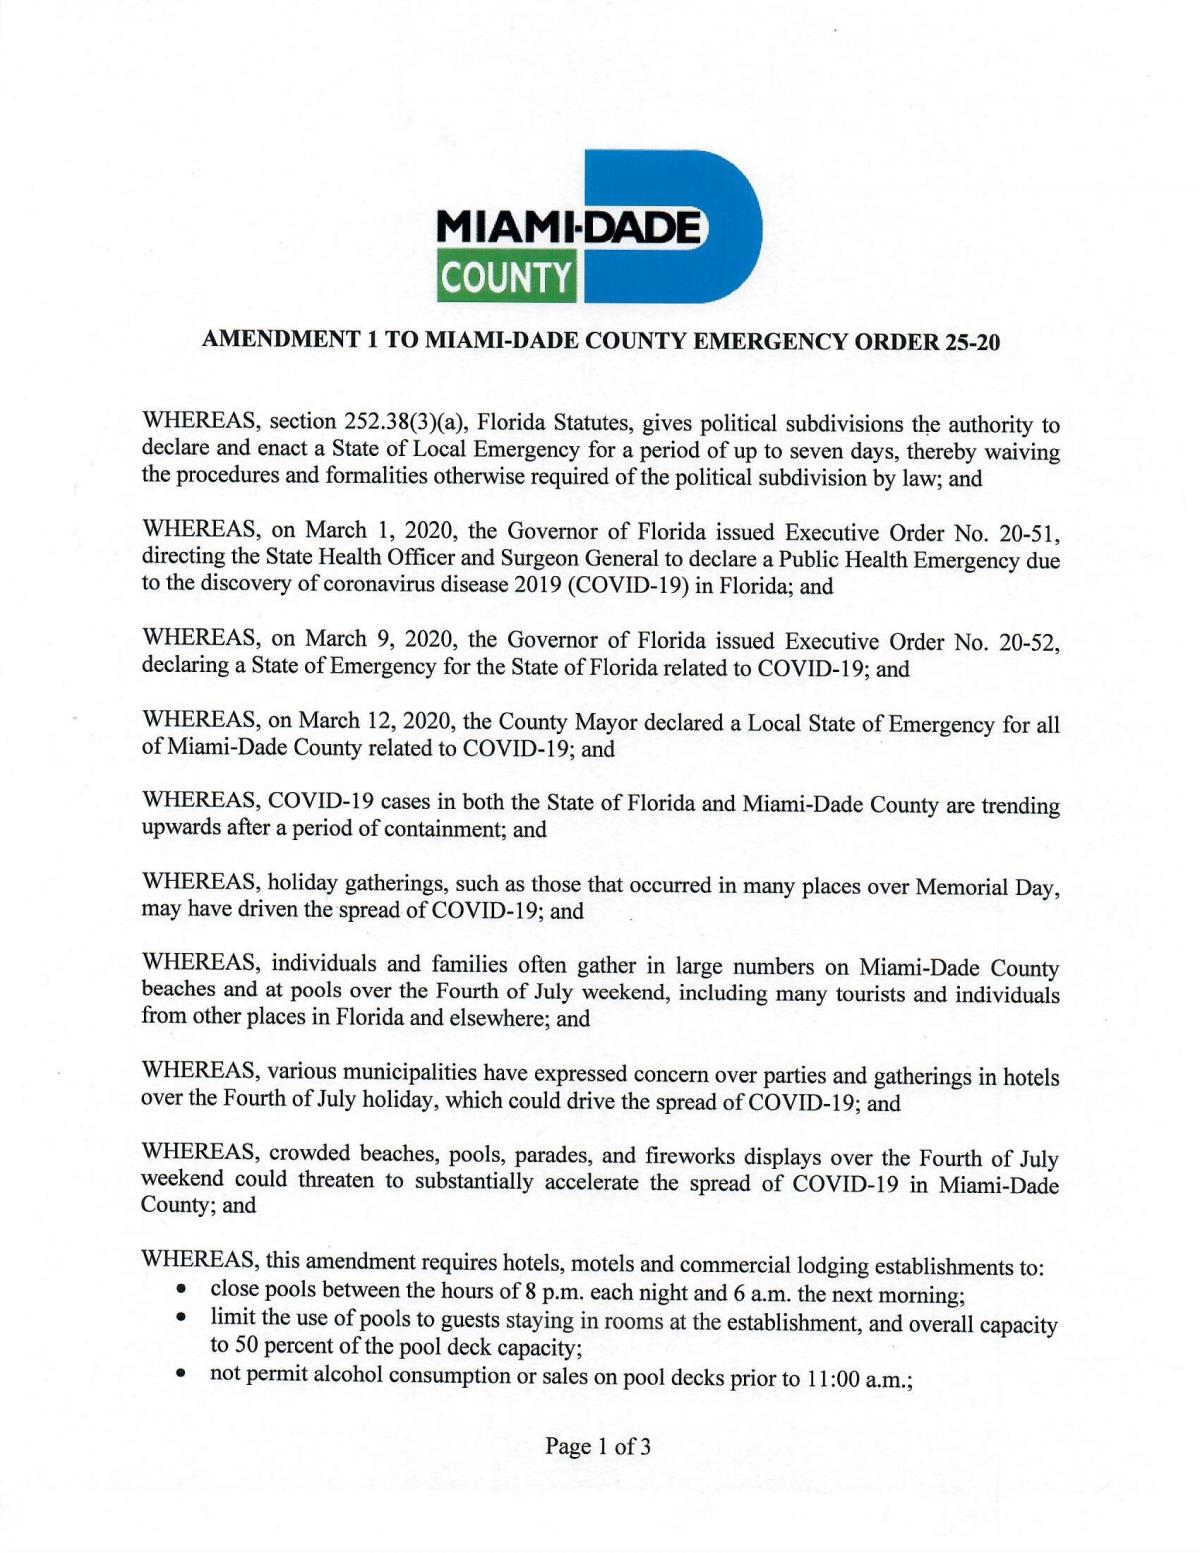 MDC Mayor Gimenez Replaces and Restates Emergency Order 25-20